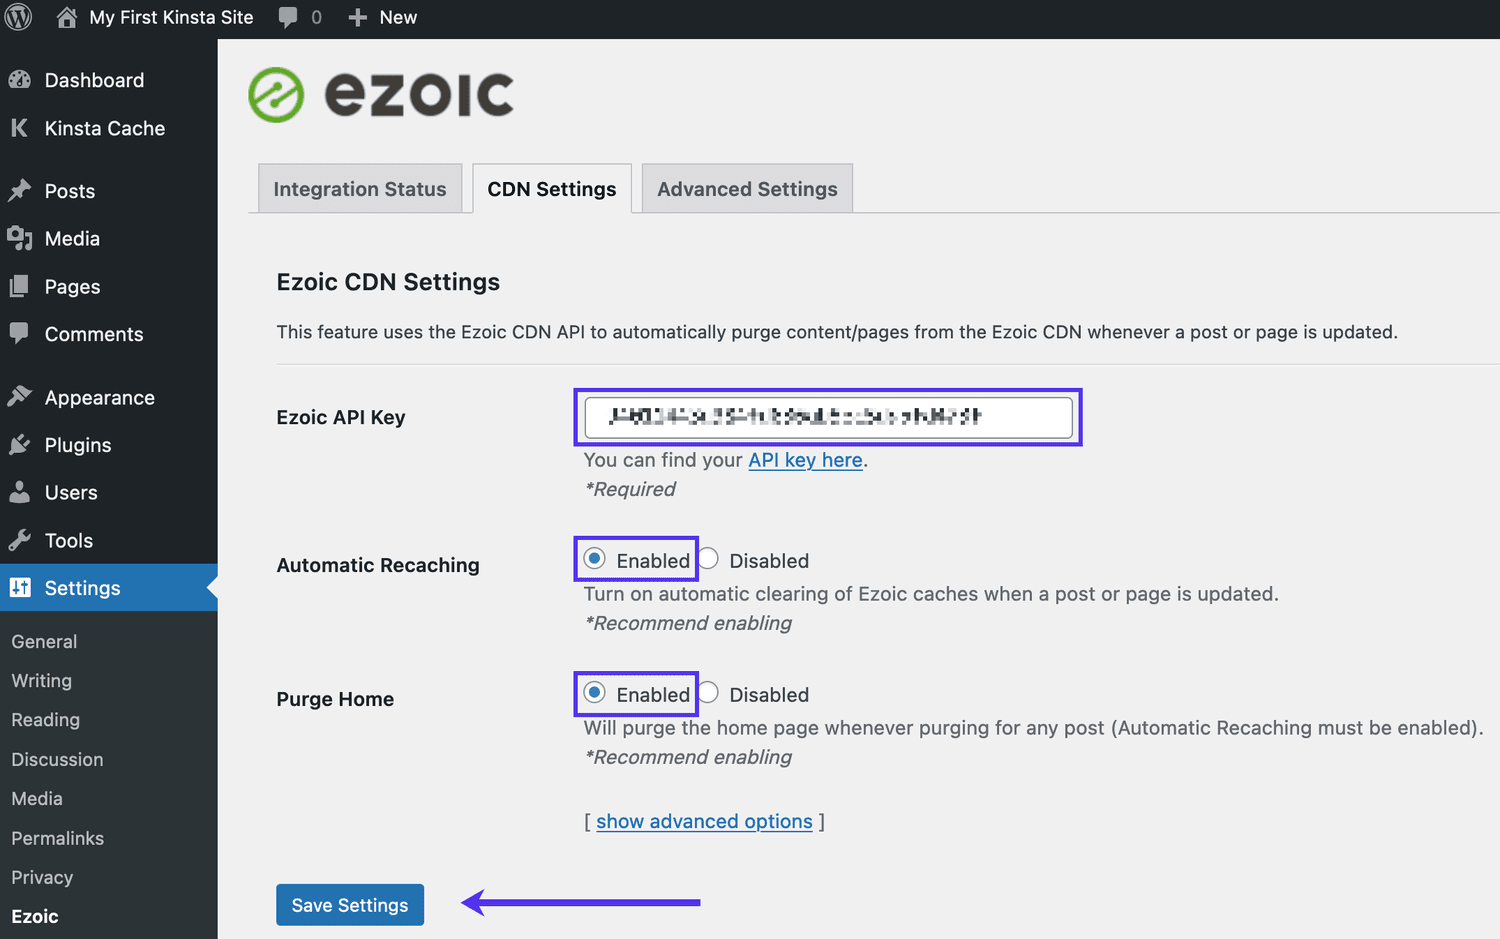 Pegue su clave API en la configuración del plugin Ezoic en su panel de control de WordPress.